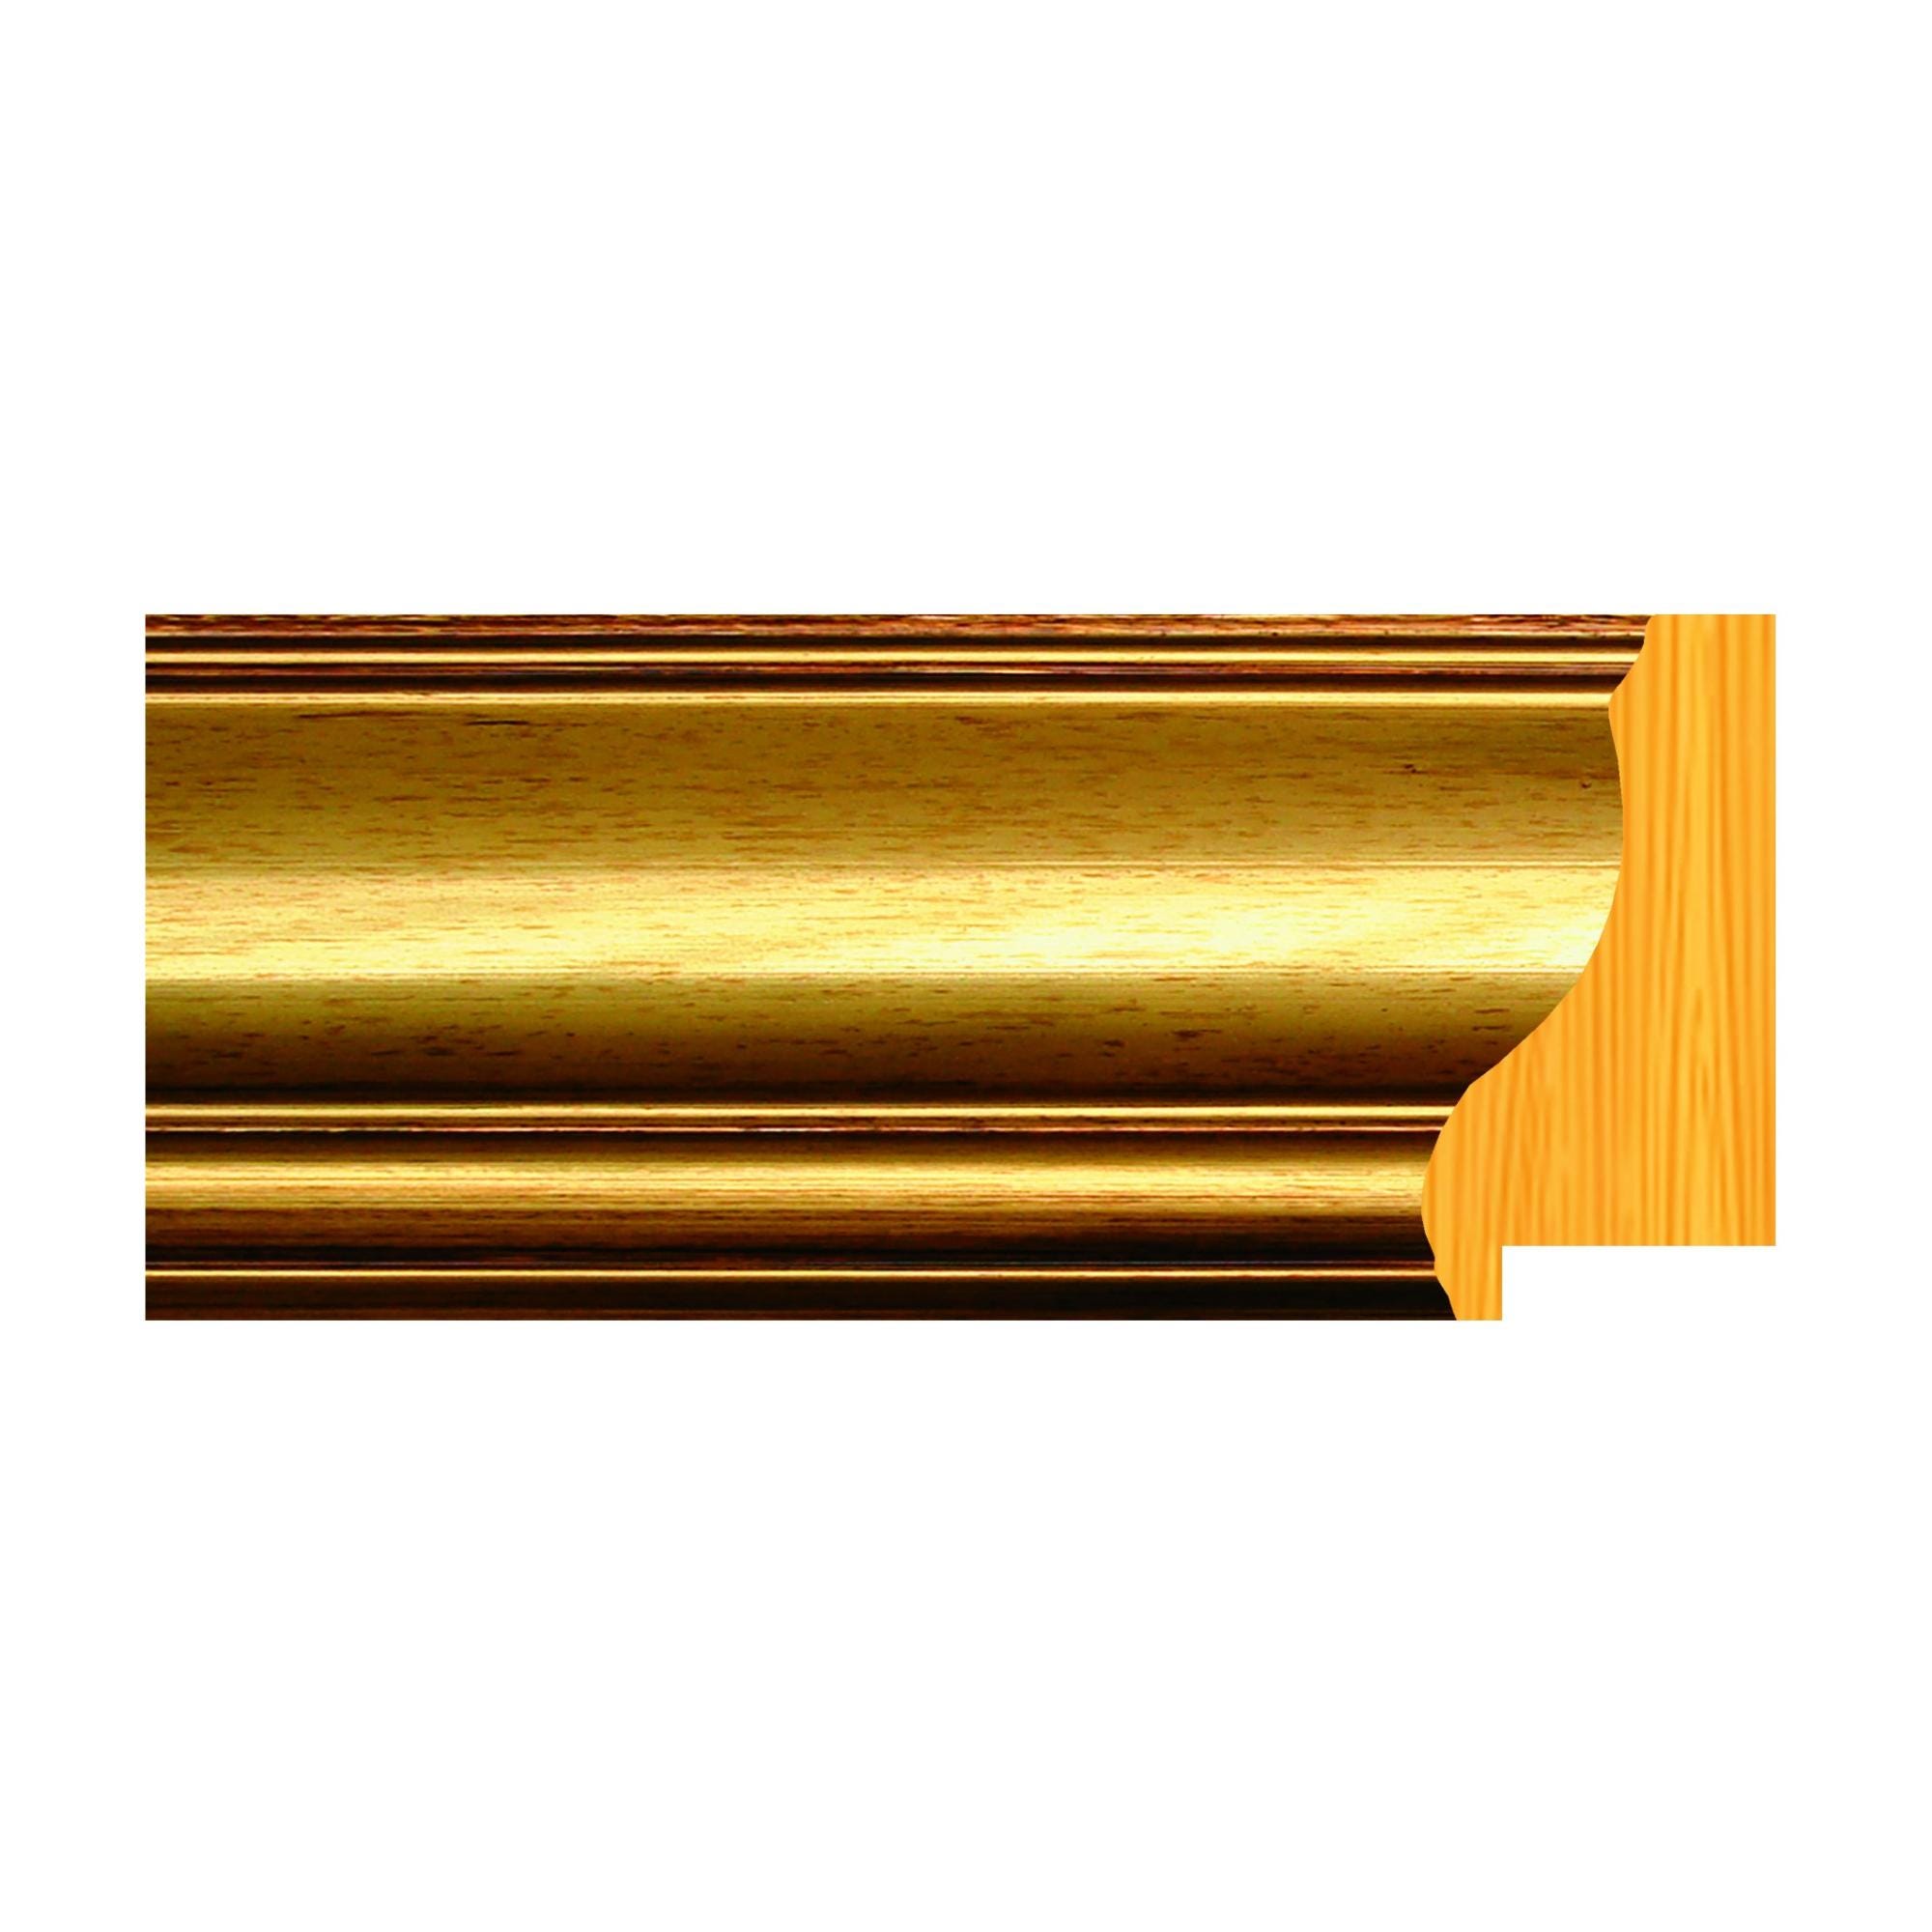 Asta per cornice Rov in legno filo oro dorato 7 cm